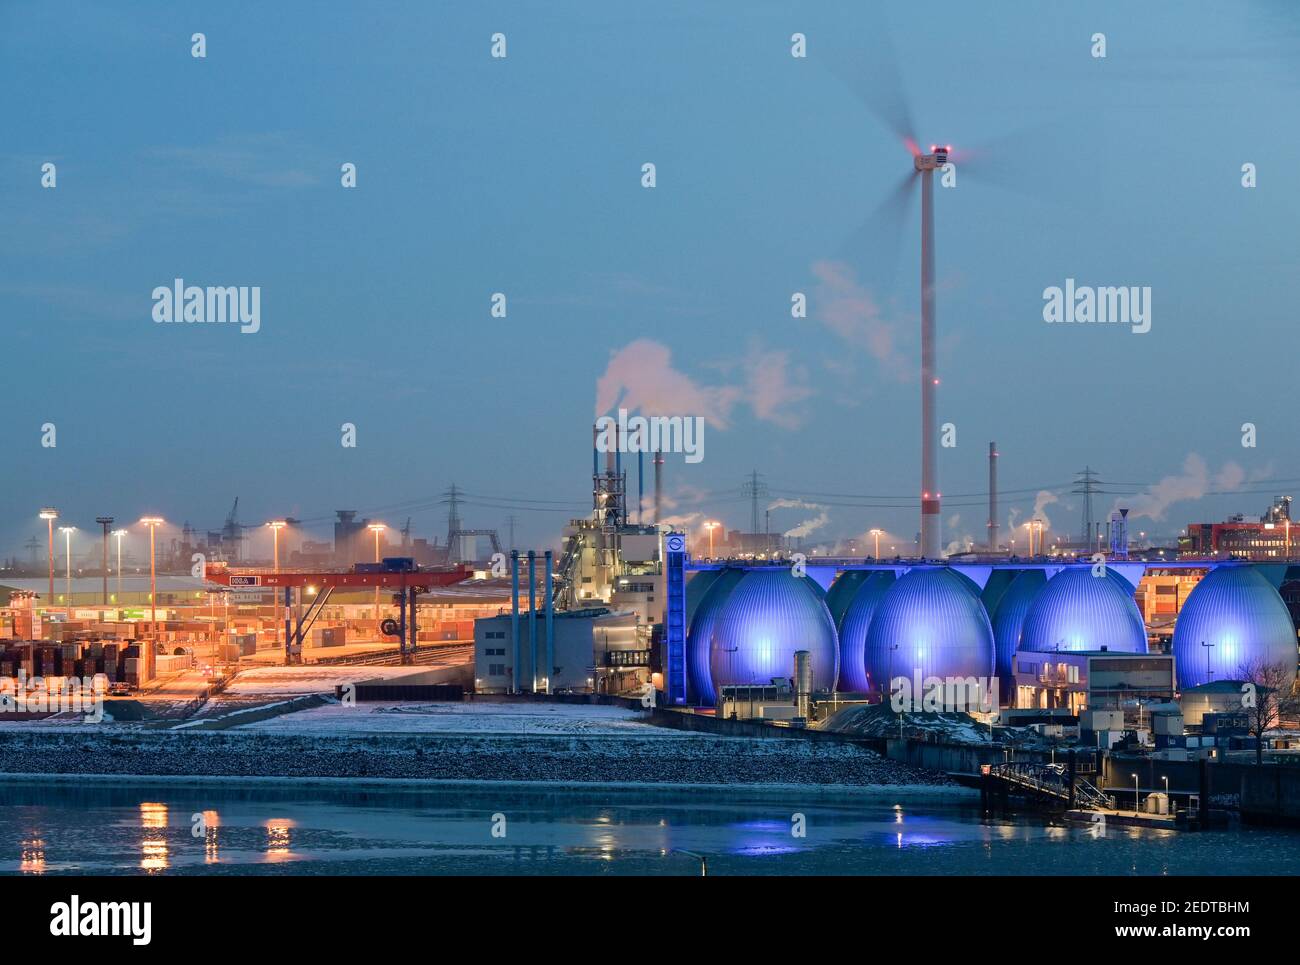 GERMANIA Amburgo, impianto di trattamento delle acque reflue della società di Amburgo acque di processo fognature e fanghi a biogas per l'approvvigionamento di rete pubblica di gas, impianti di biogas, serbatoi di fermentazione e turbina eolica Nordex Foto Stock